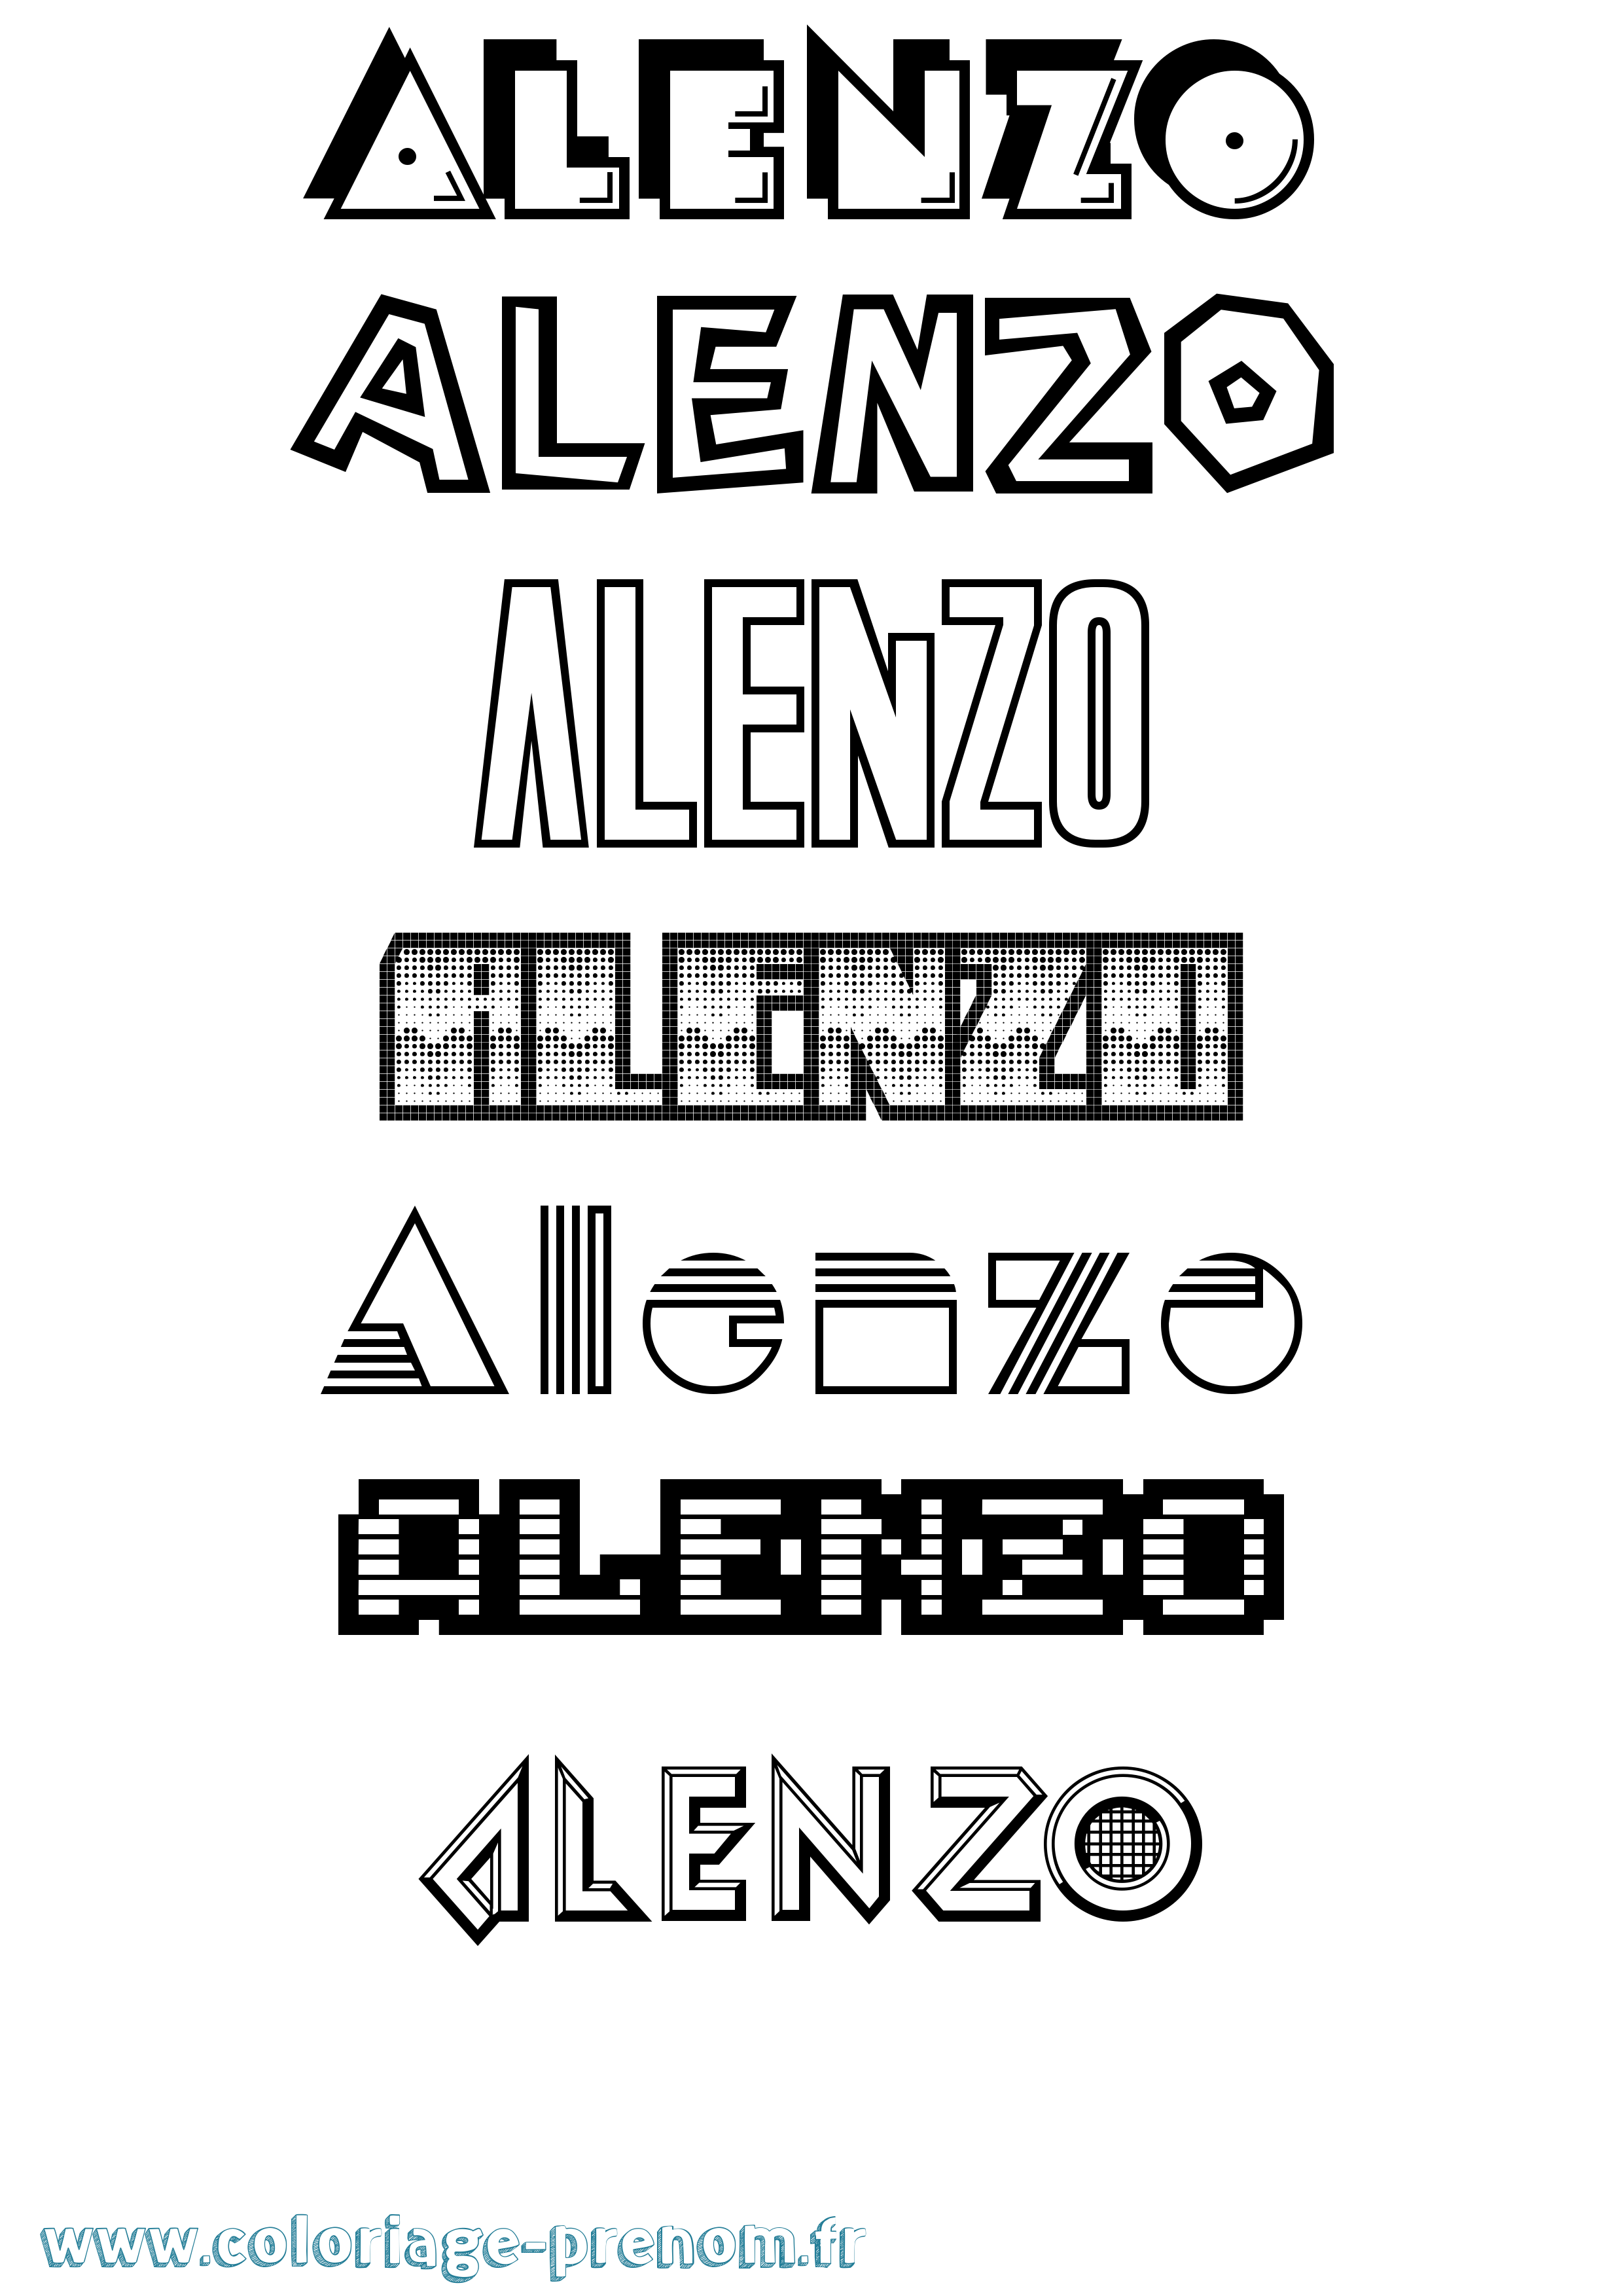 Coloriage prénom Alenzo Jeux Vidéos